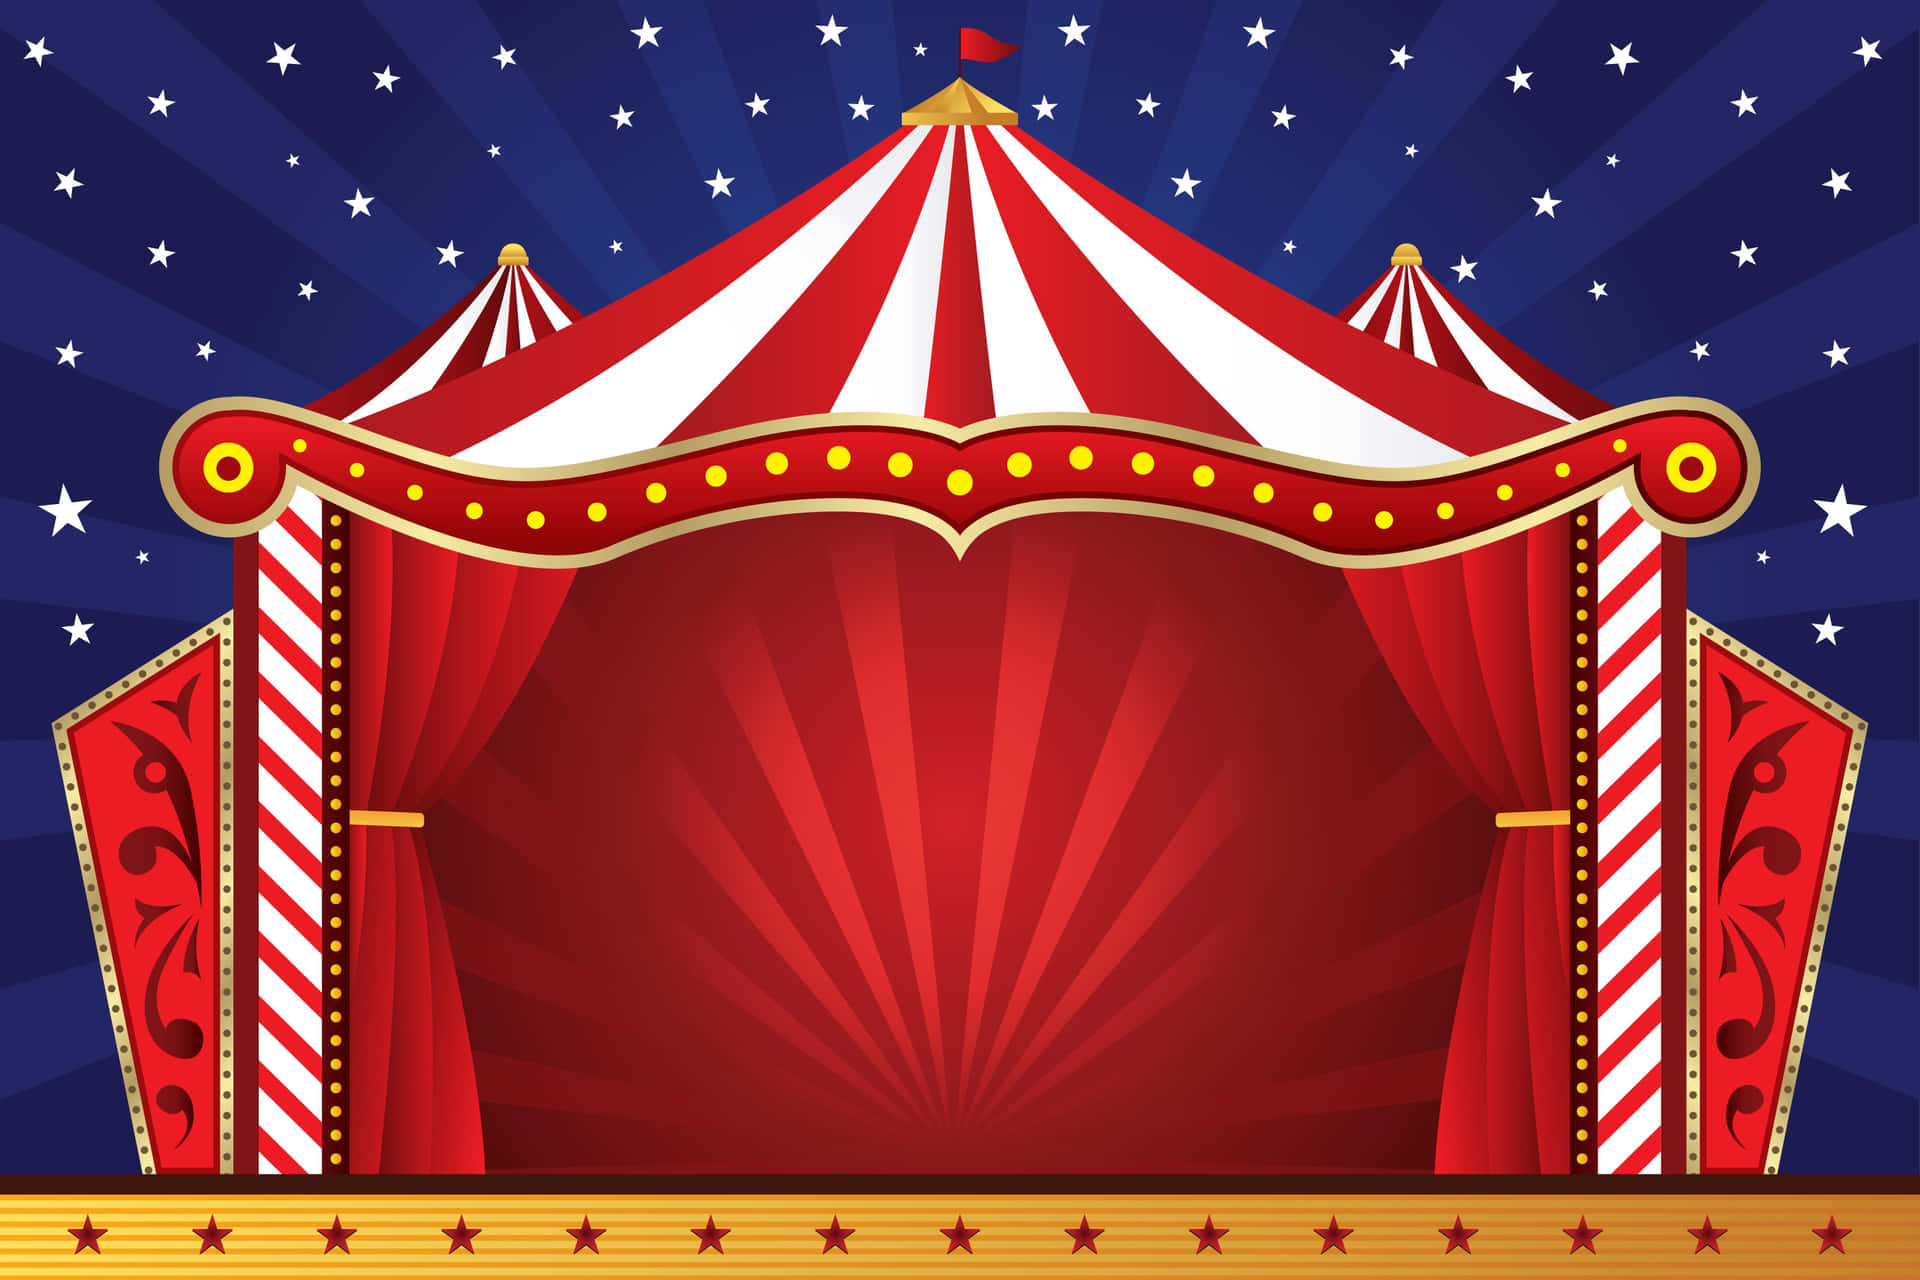 Machensie Ihren Tag Zu Einem Magischen Erlebnis, Indem Sie Den Zirkus Besuchen!